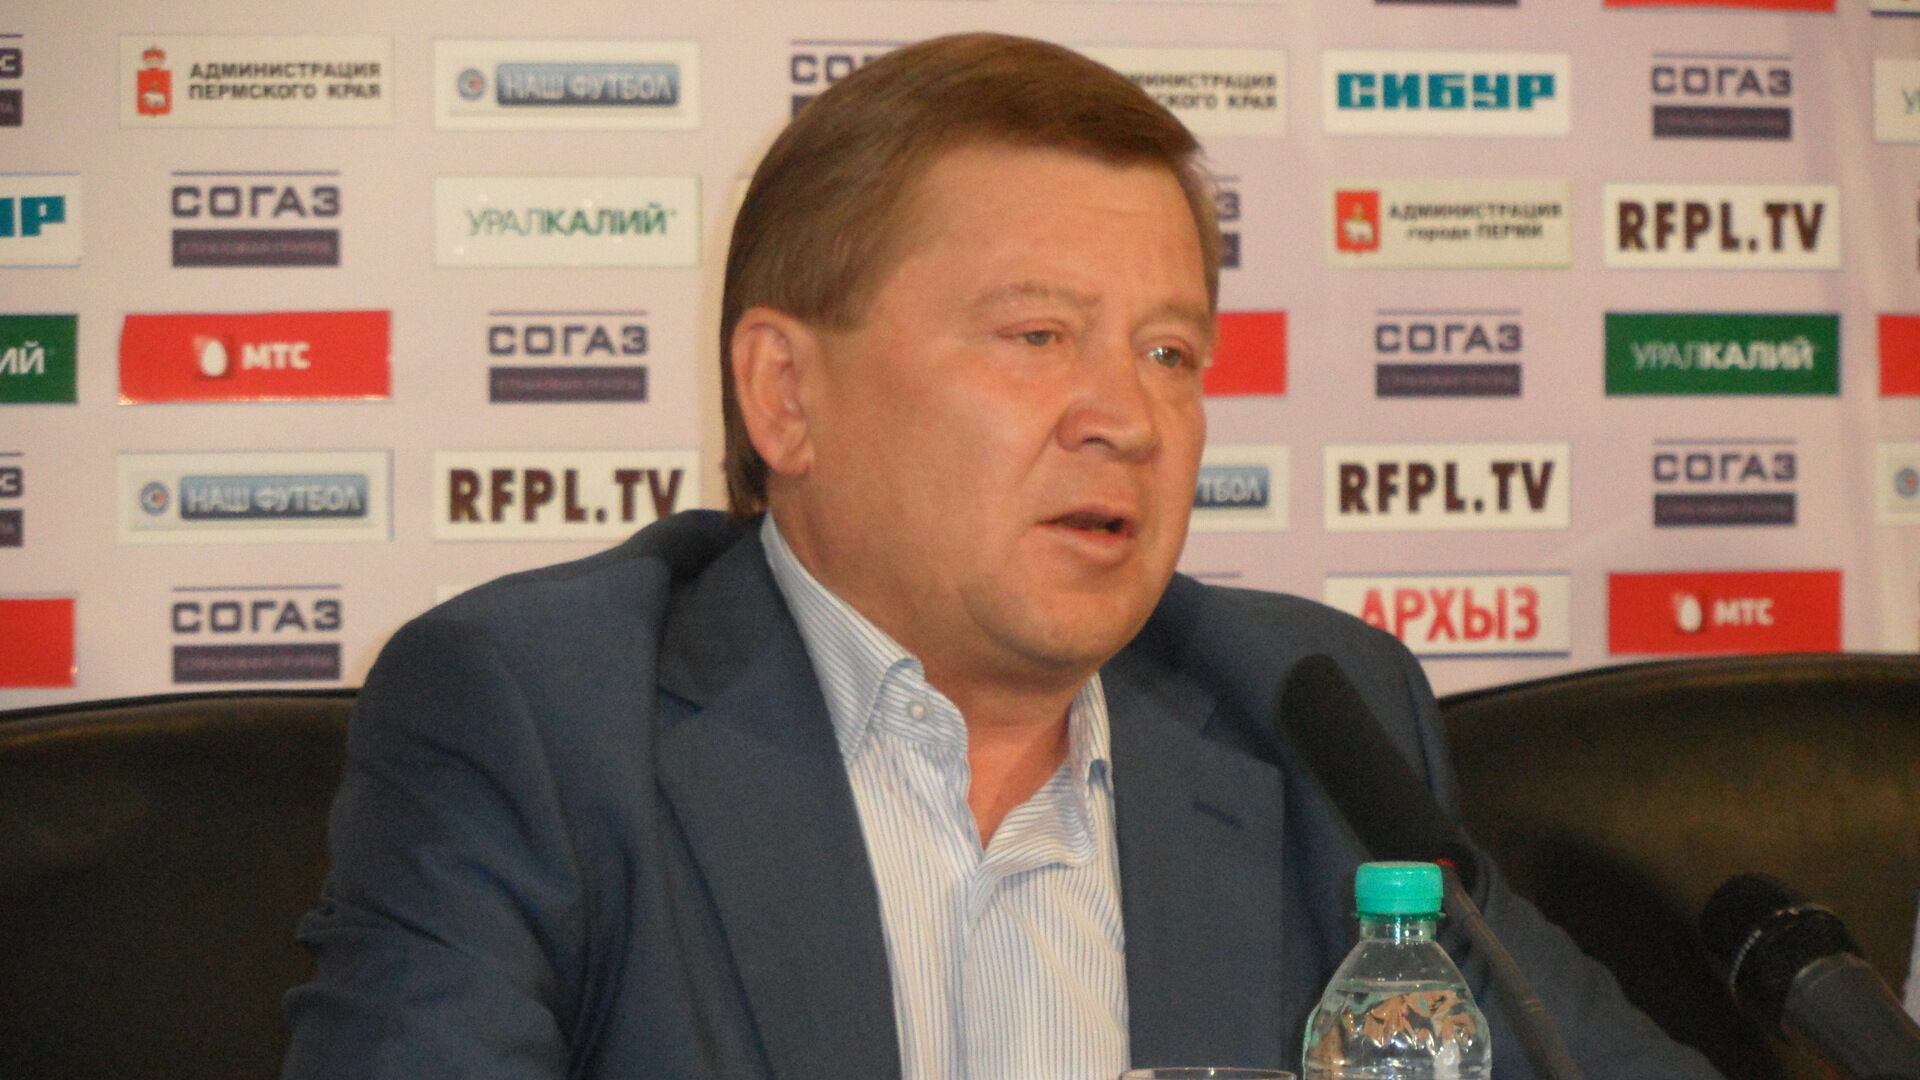 ФК «Амкар» требует у своего бывшего президента 560 тысяч рублей